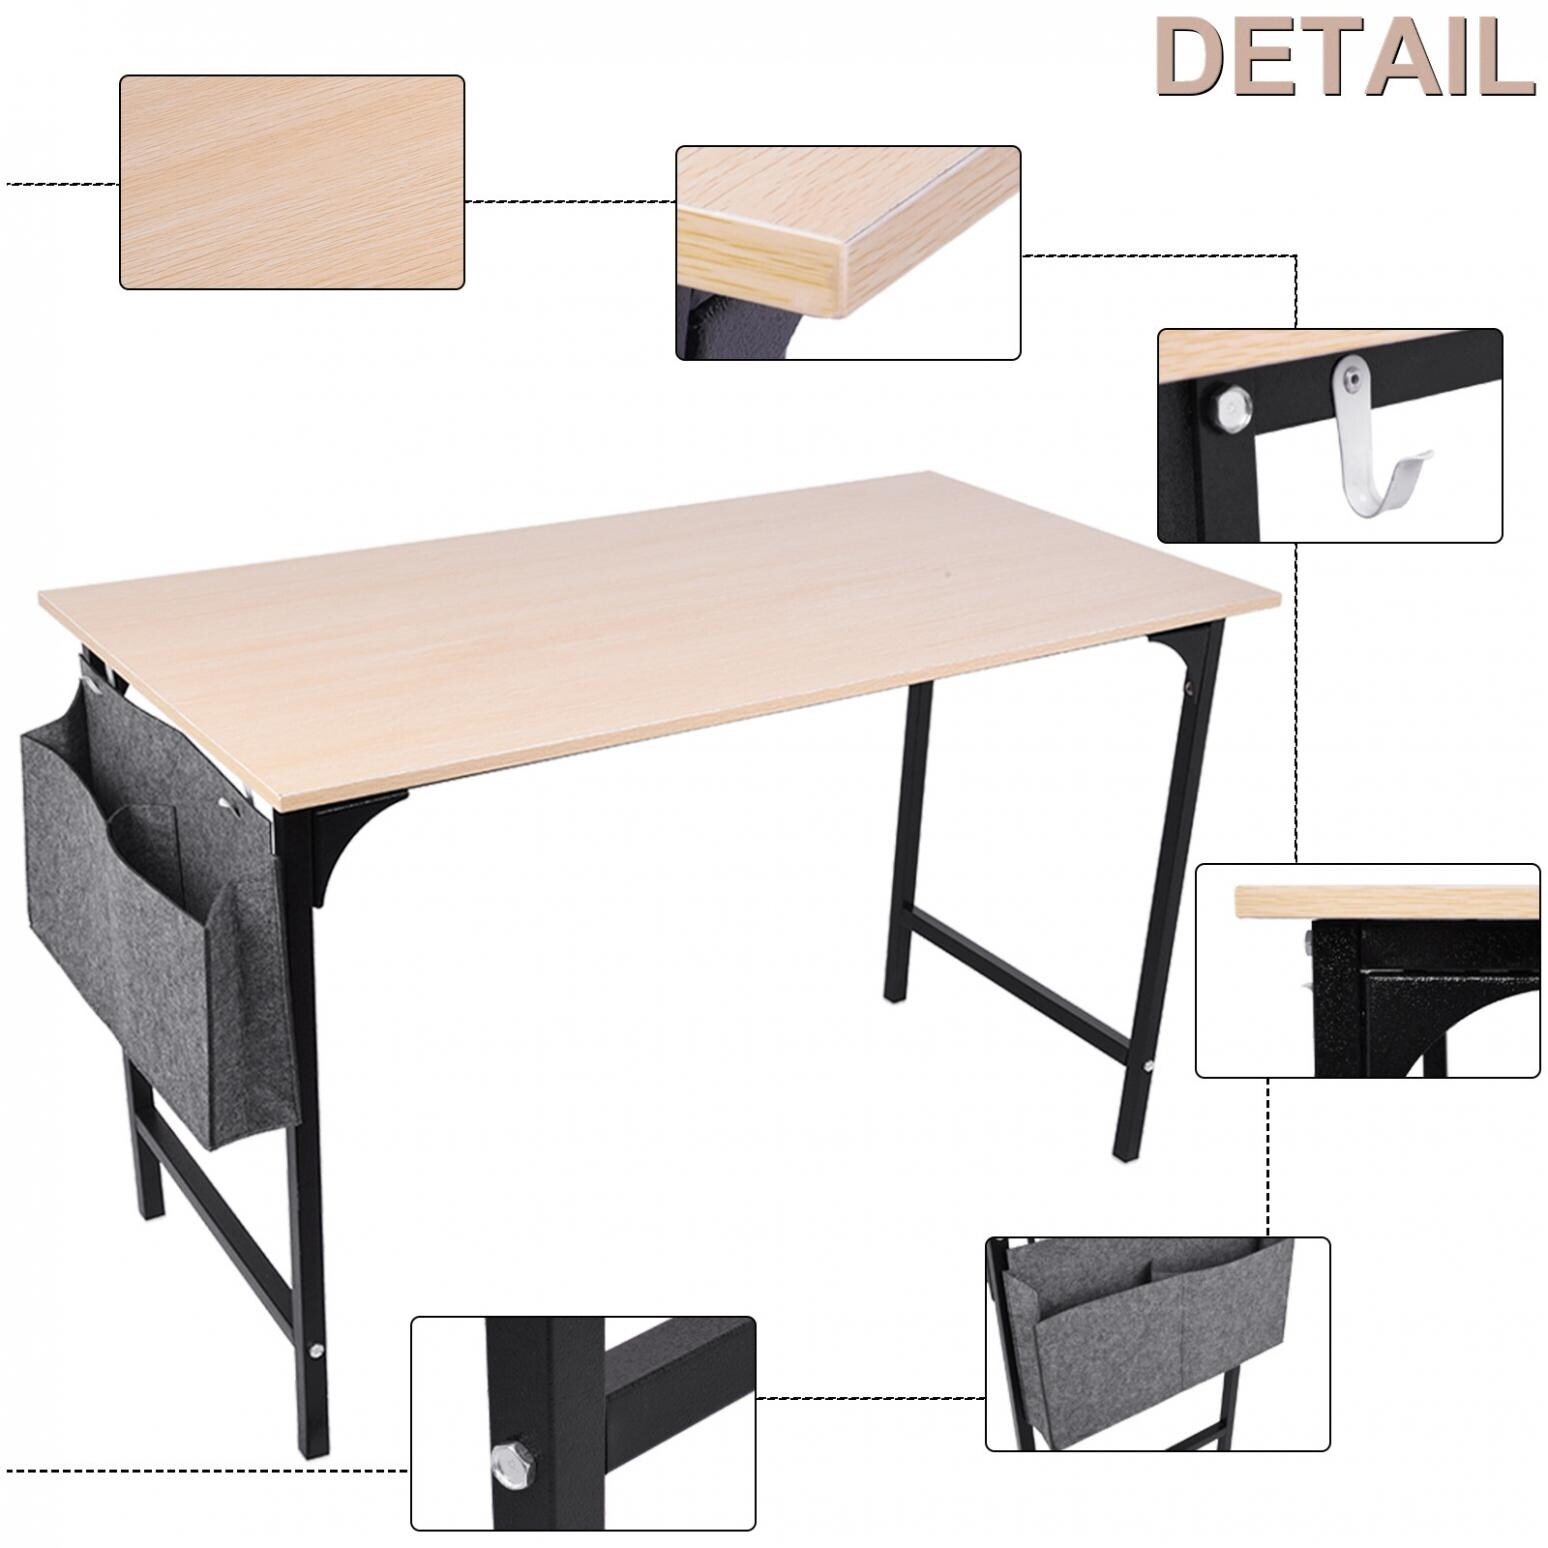 Home Desktop Computer Desk Bedroom Laptop Study Table Office Desk - Bed  Bath & Beyond - 32561380